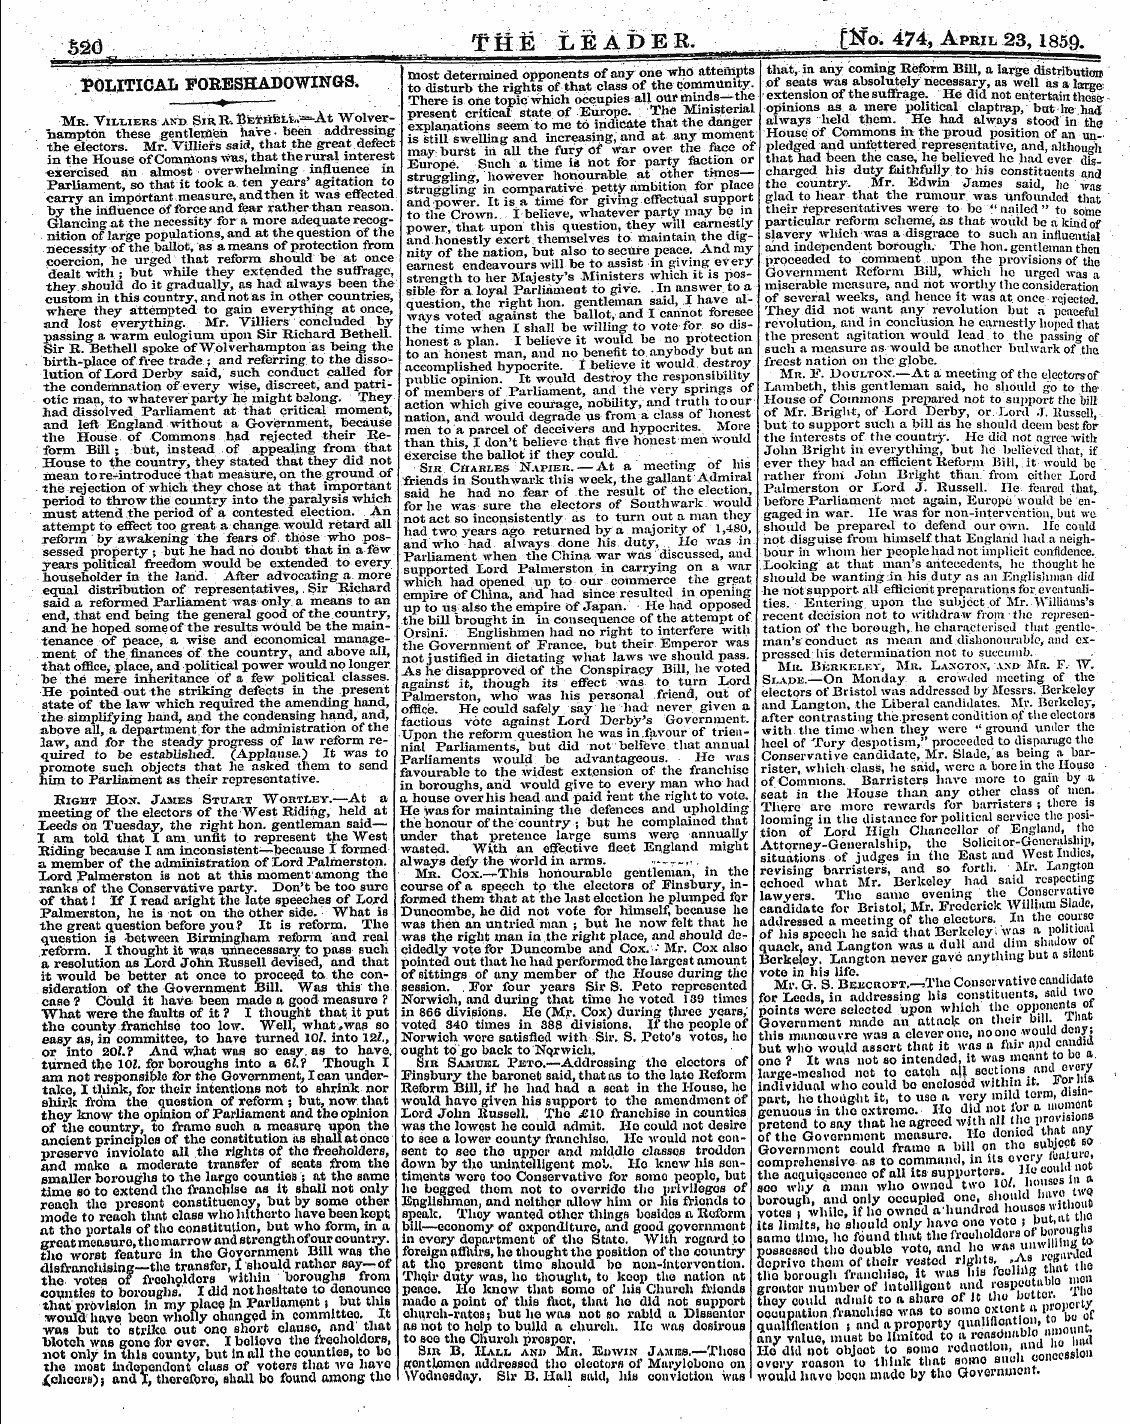 Leader (1850-1860): jS F Y, 2nd edition - Sm Ffie Leader. |Ho> 474, April 23, 1859...